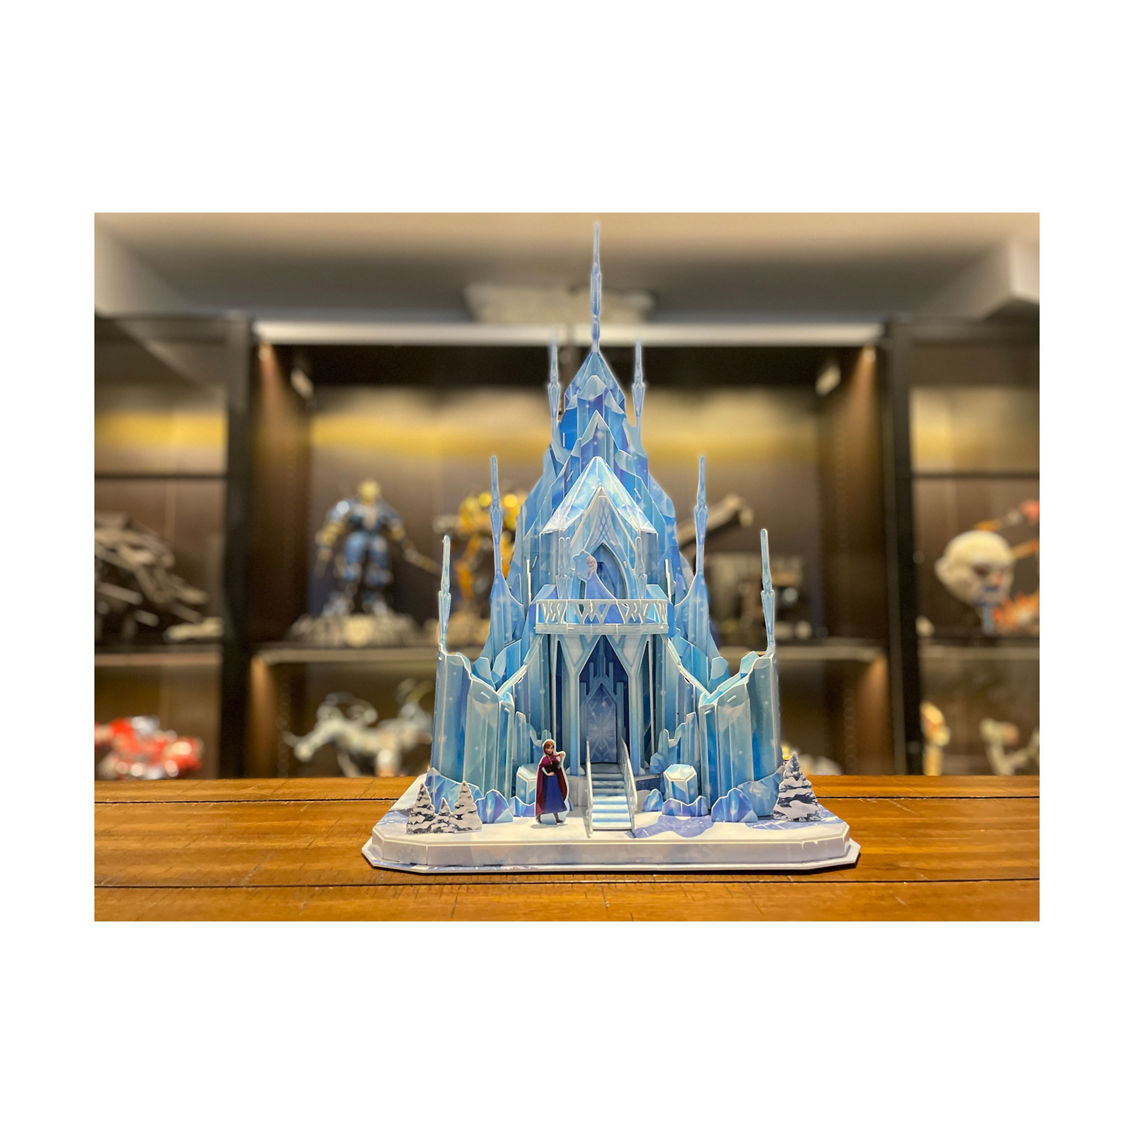 4D Cityscape Disney Frozen - Elsa's Ice Palace 3D Puzzle: 73 Pcs - Image 5 of 5